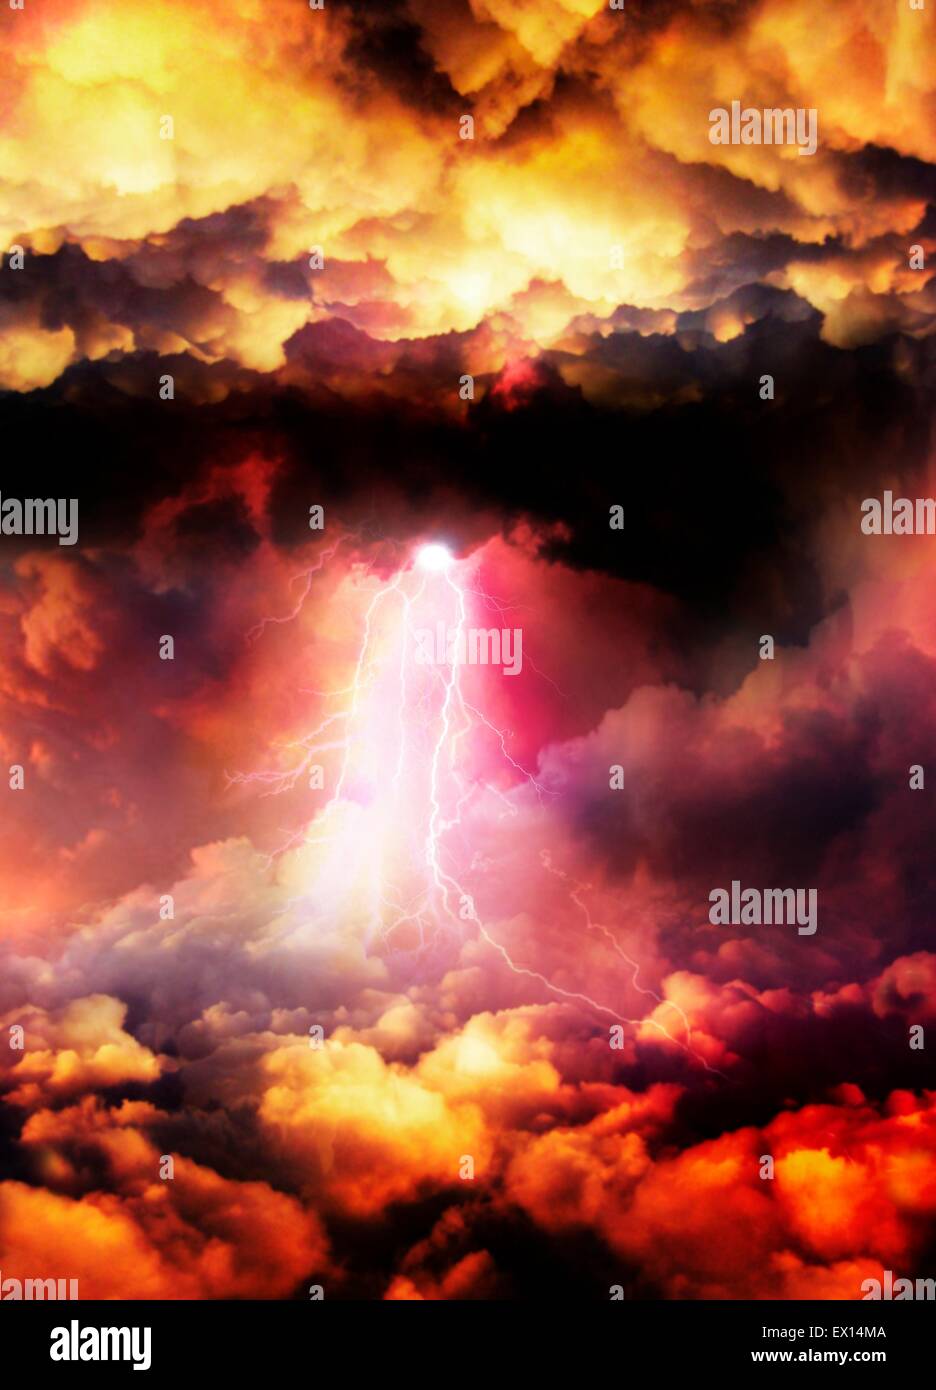 La foudre frappant à travers les nuages, illustration de l'ordinateur. Banque D'Images